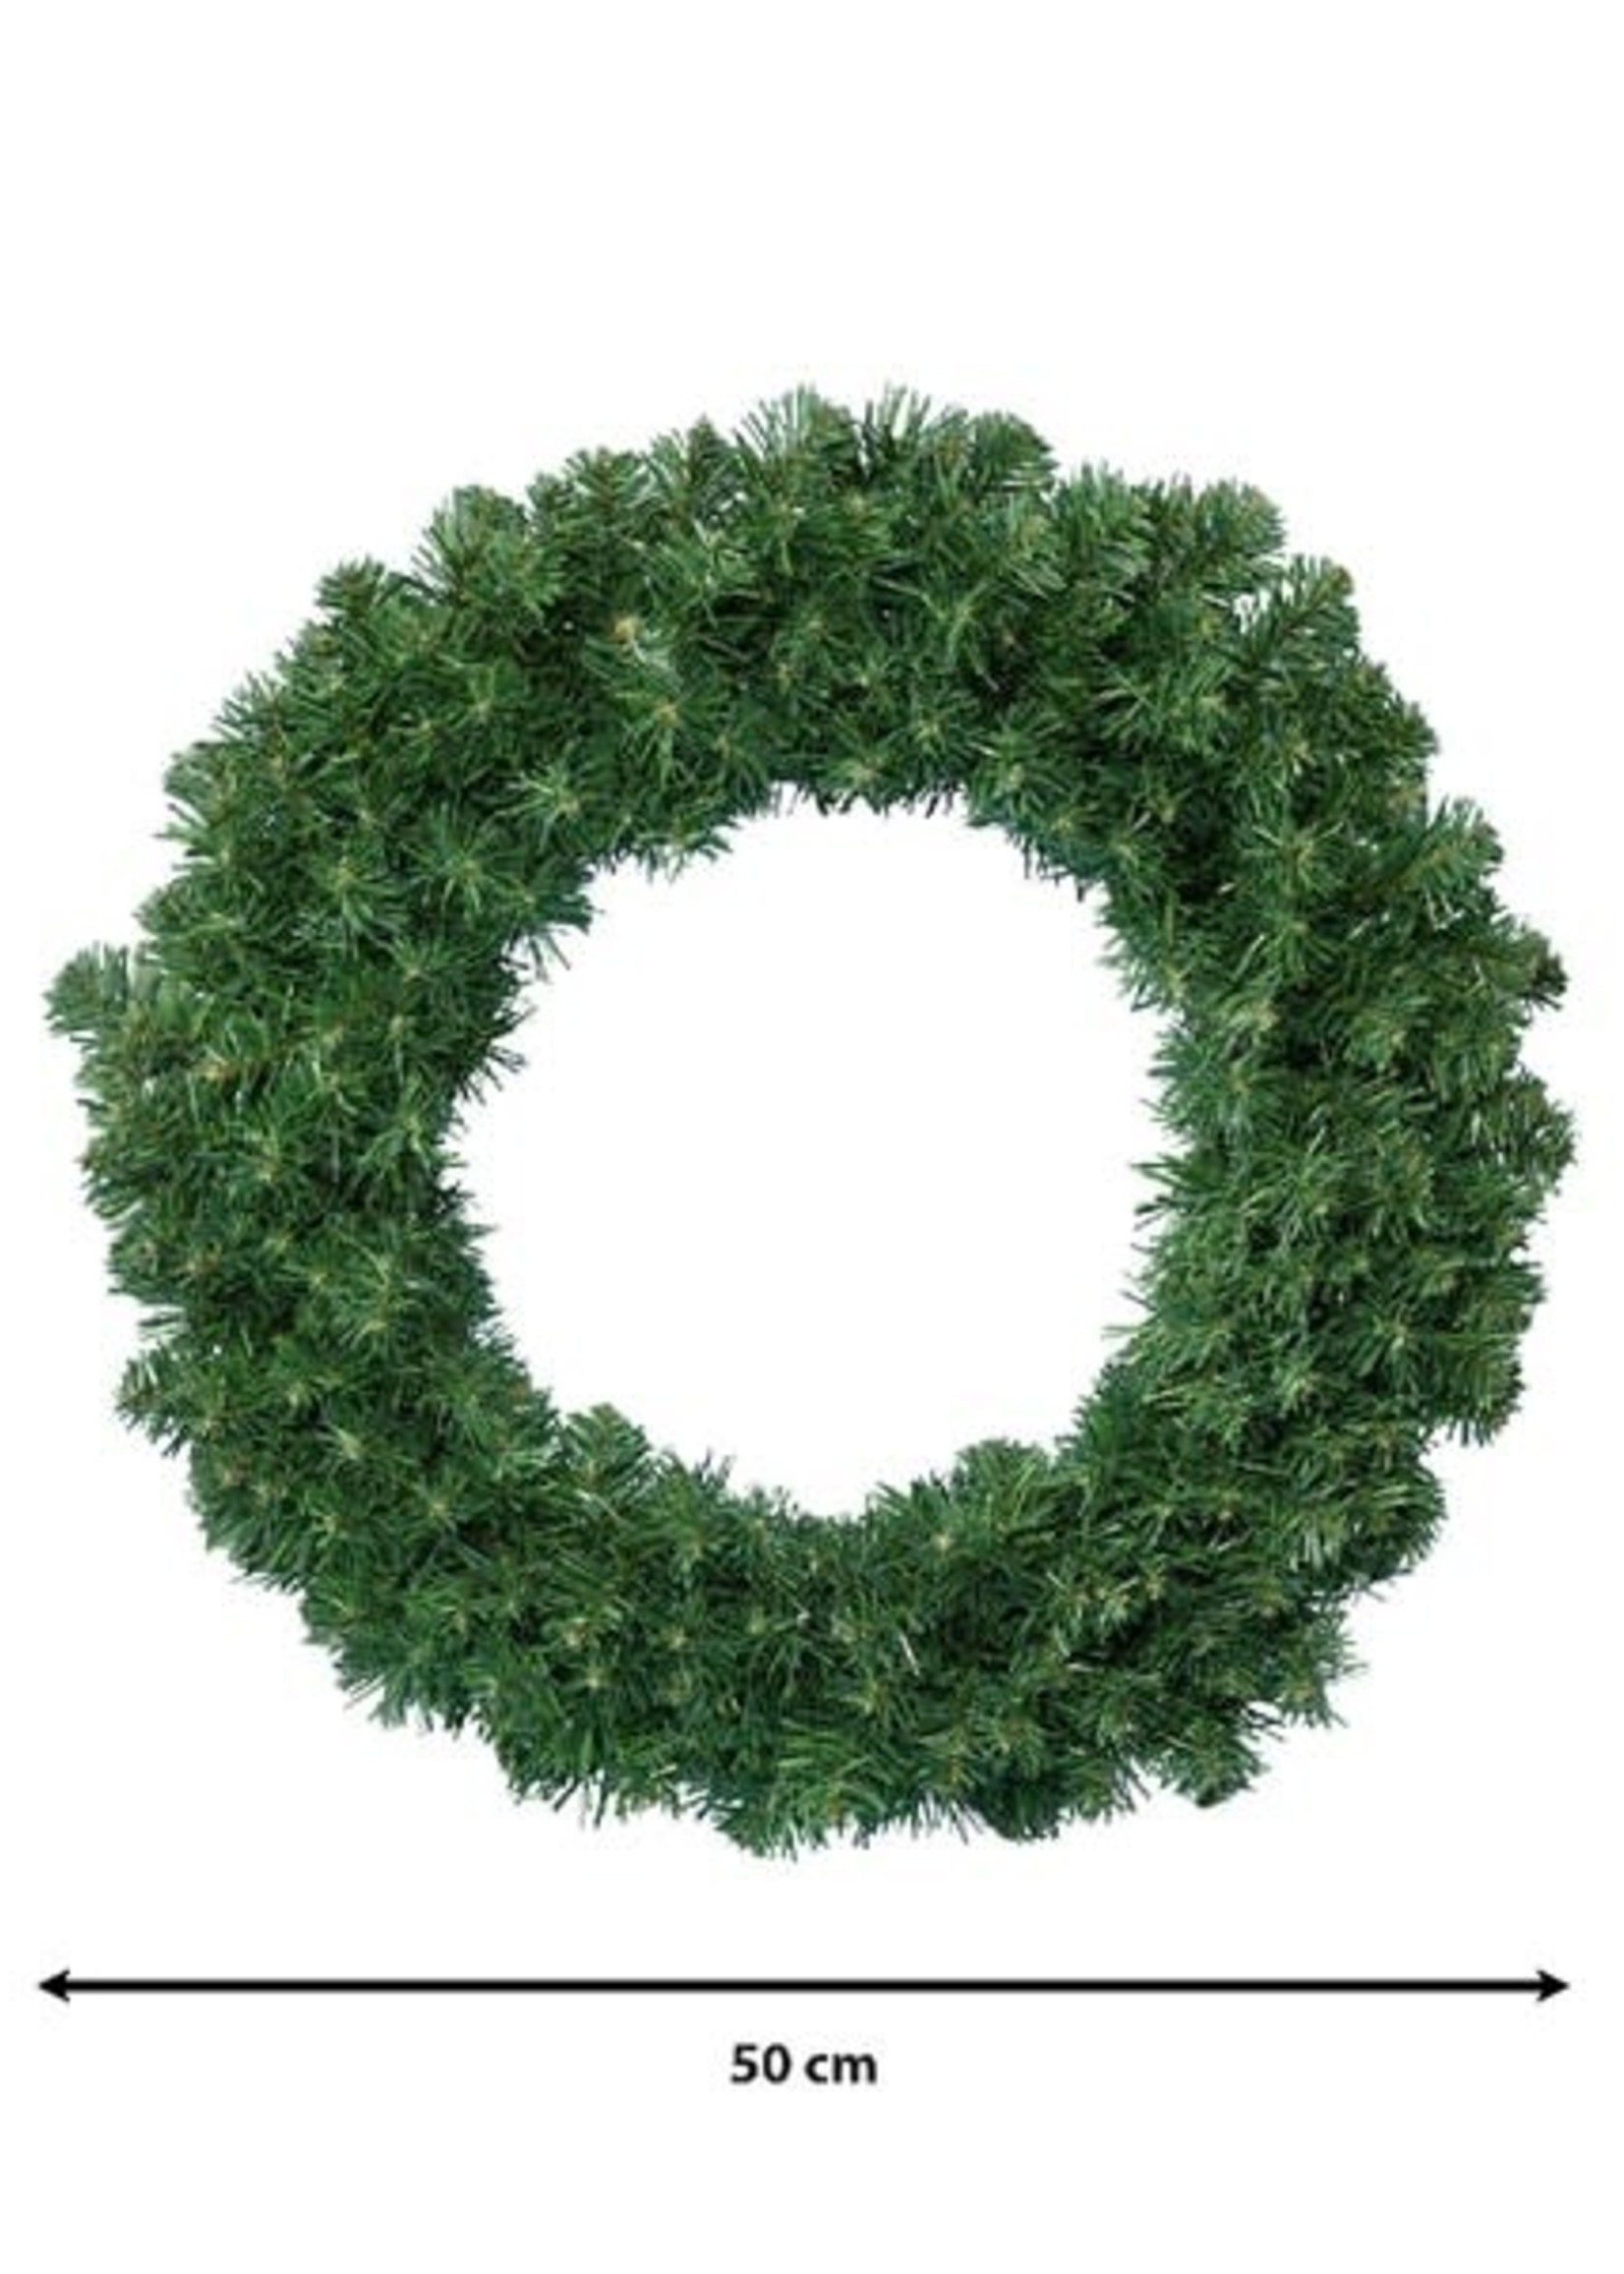 Everlands Imperial Green Wreath 50cm Indoor/Outdoor